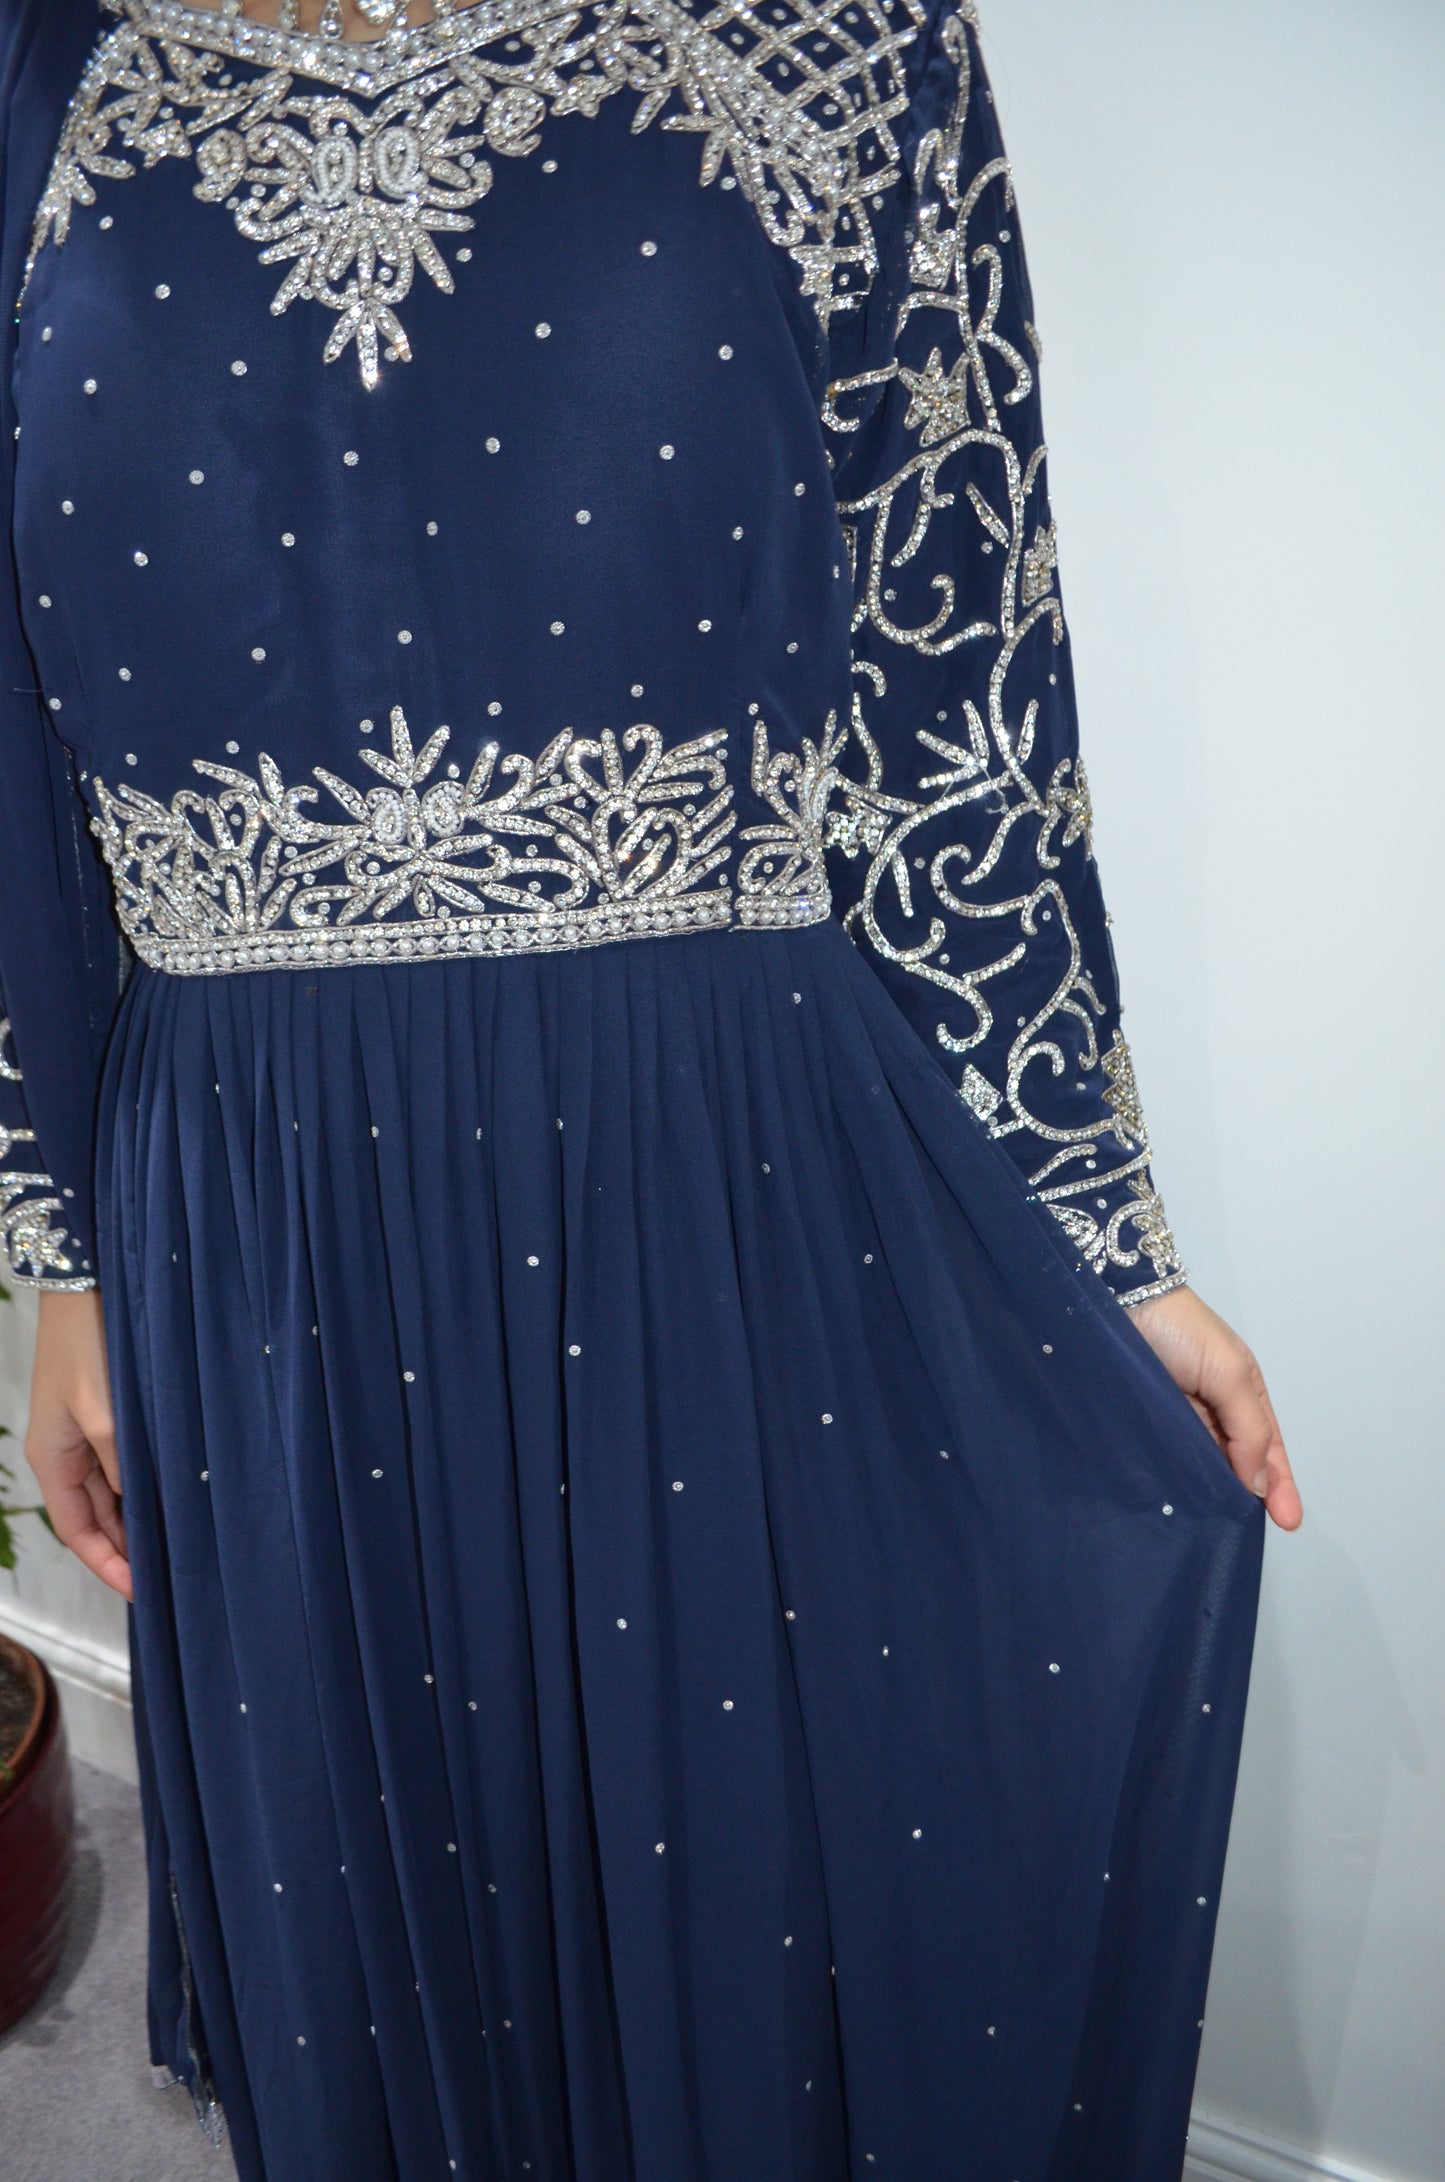 Stunning Navy Blue long dress/Gown